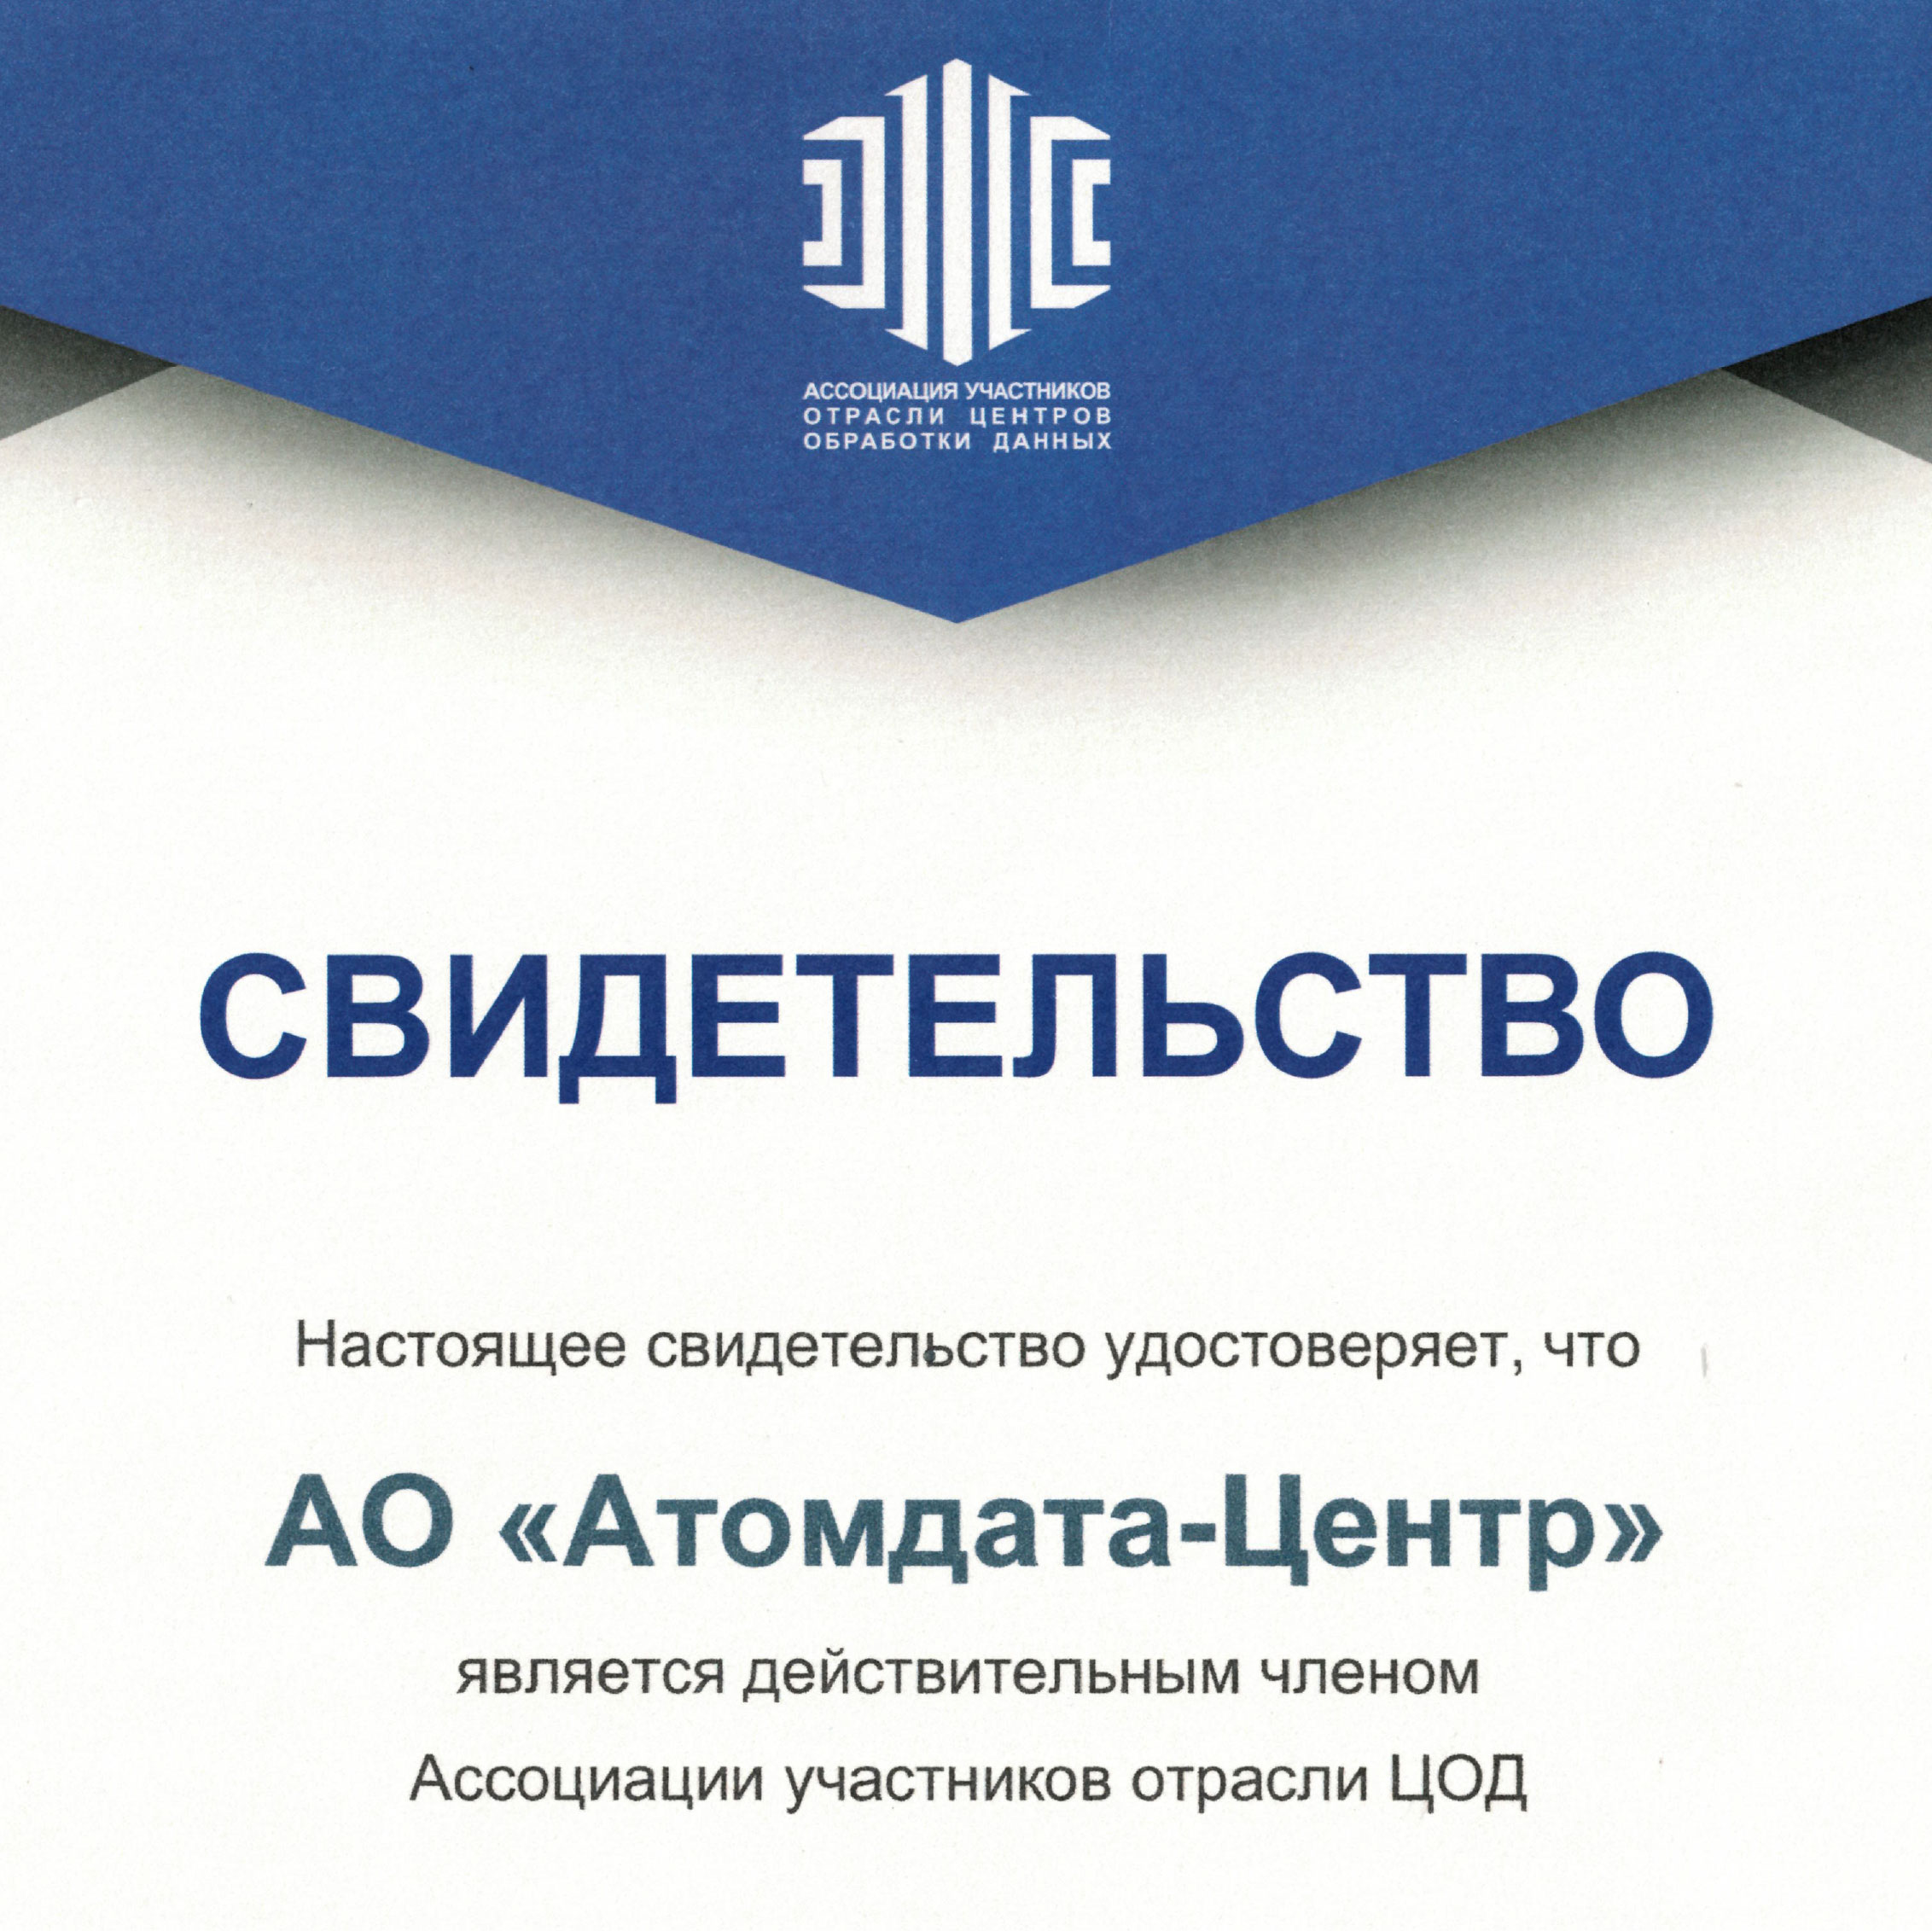 «Атомдата-Центр» стала членом российской Ассоциации участников отрасли ЦОД